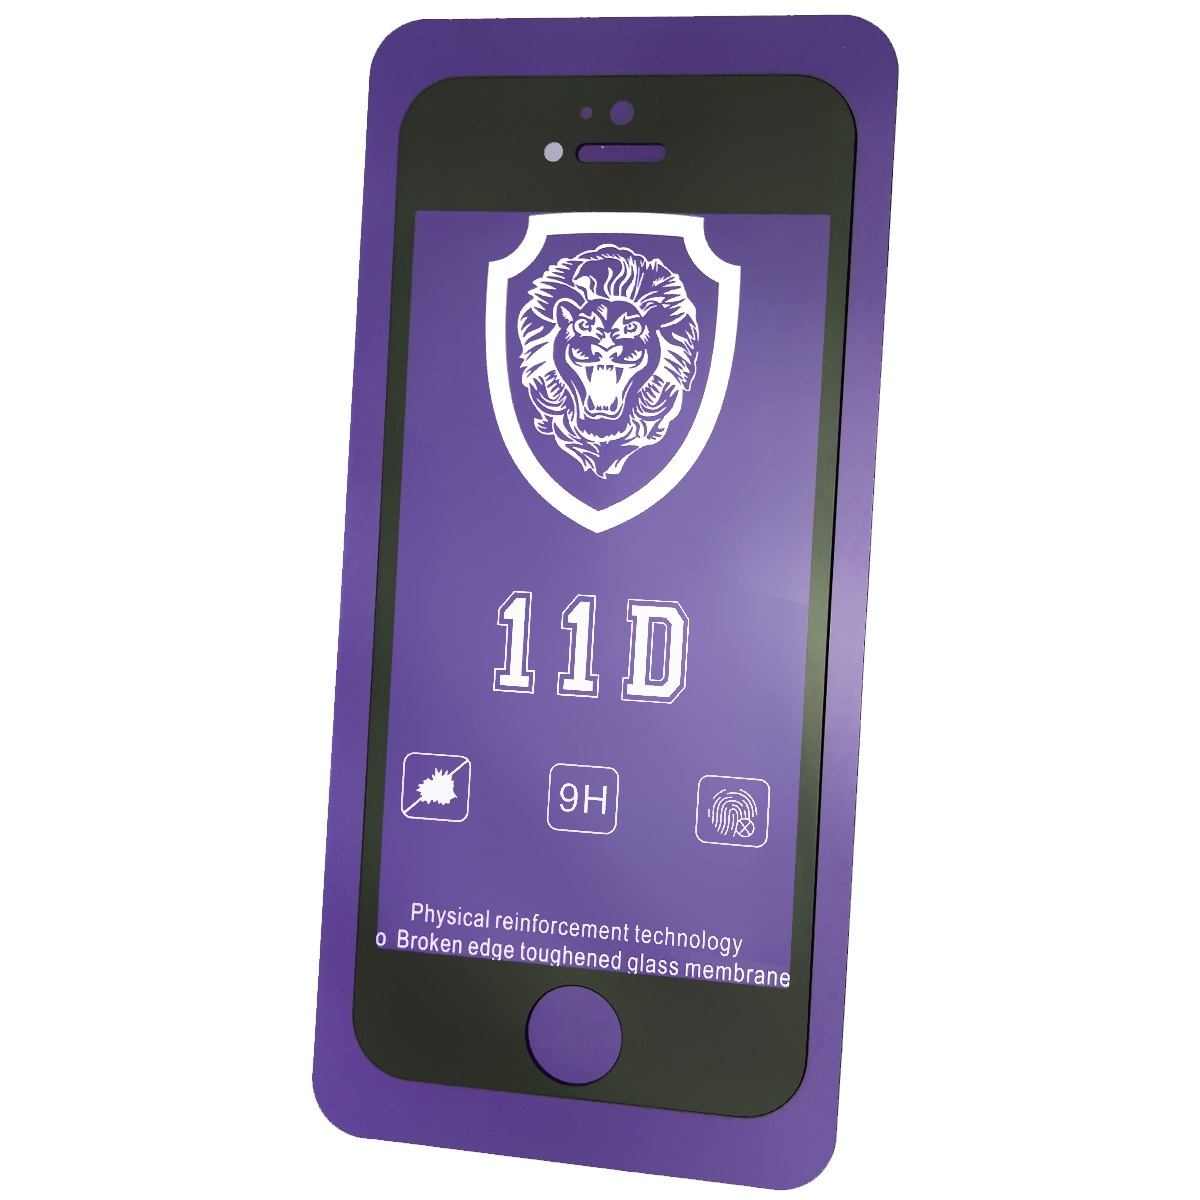 Защитное стекло 11D LION FULL GLUE для APPLE iPhone 5, iPhone 5G, iPhone 5S, iPhone SE, цвет окантовки черный.